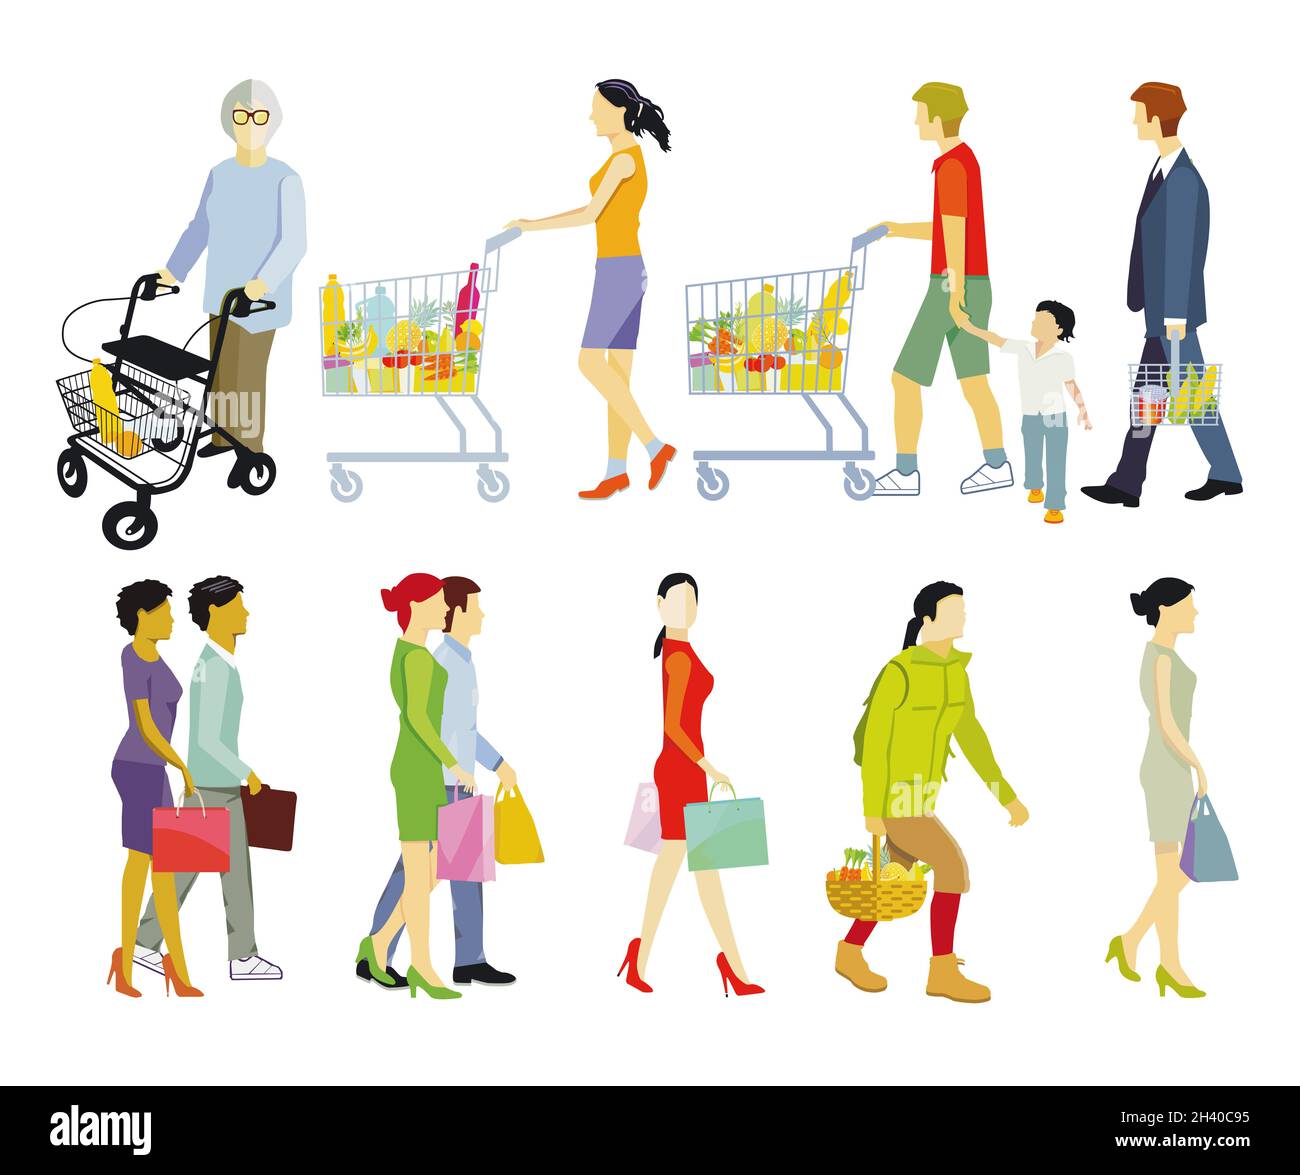 People shopping, isolated on white illustration Stock Photo